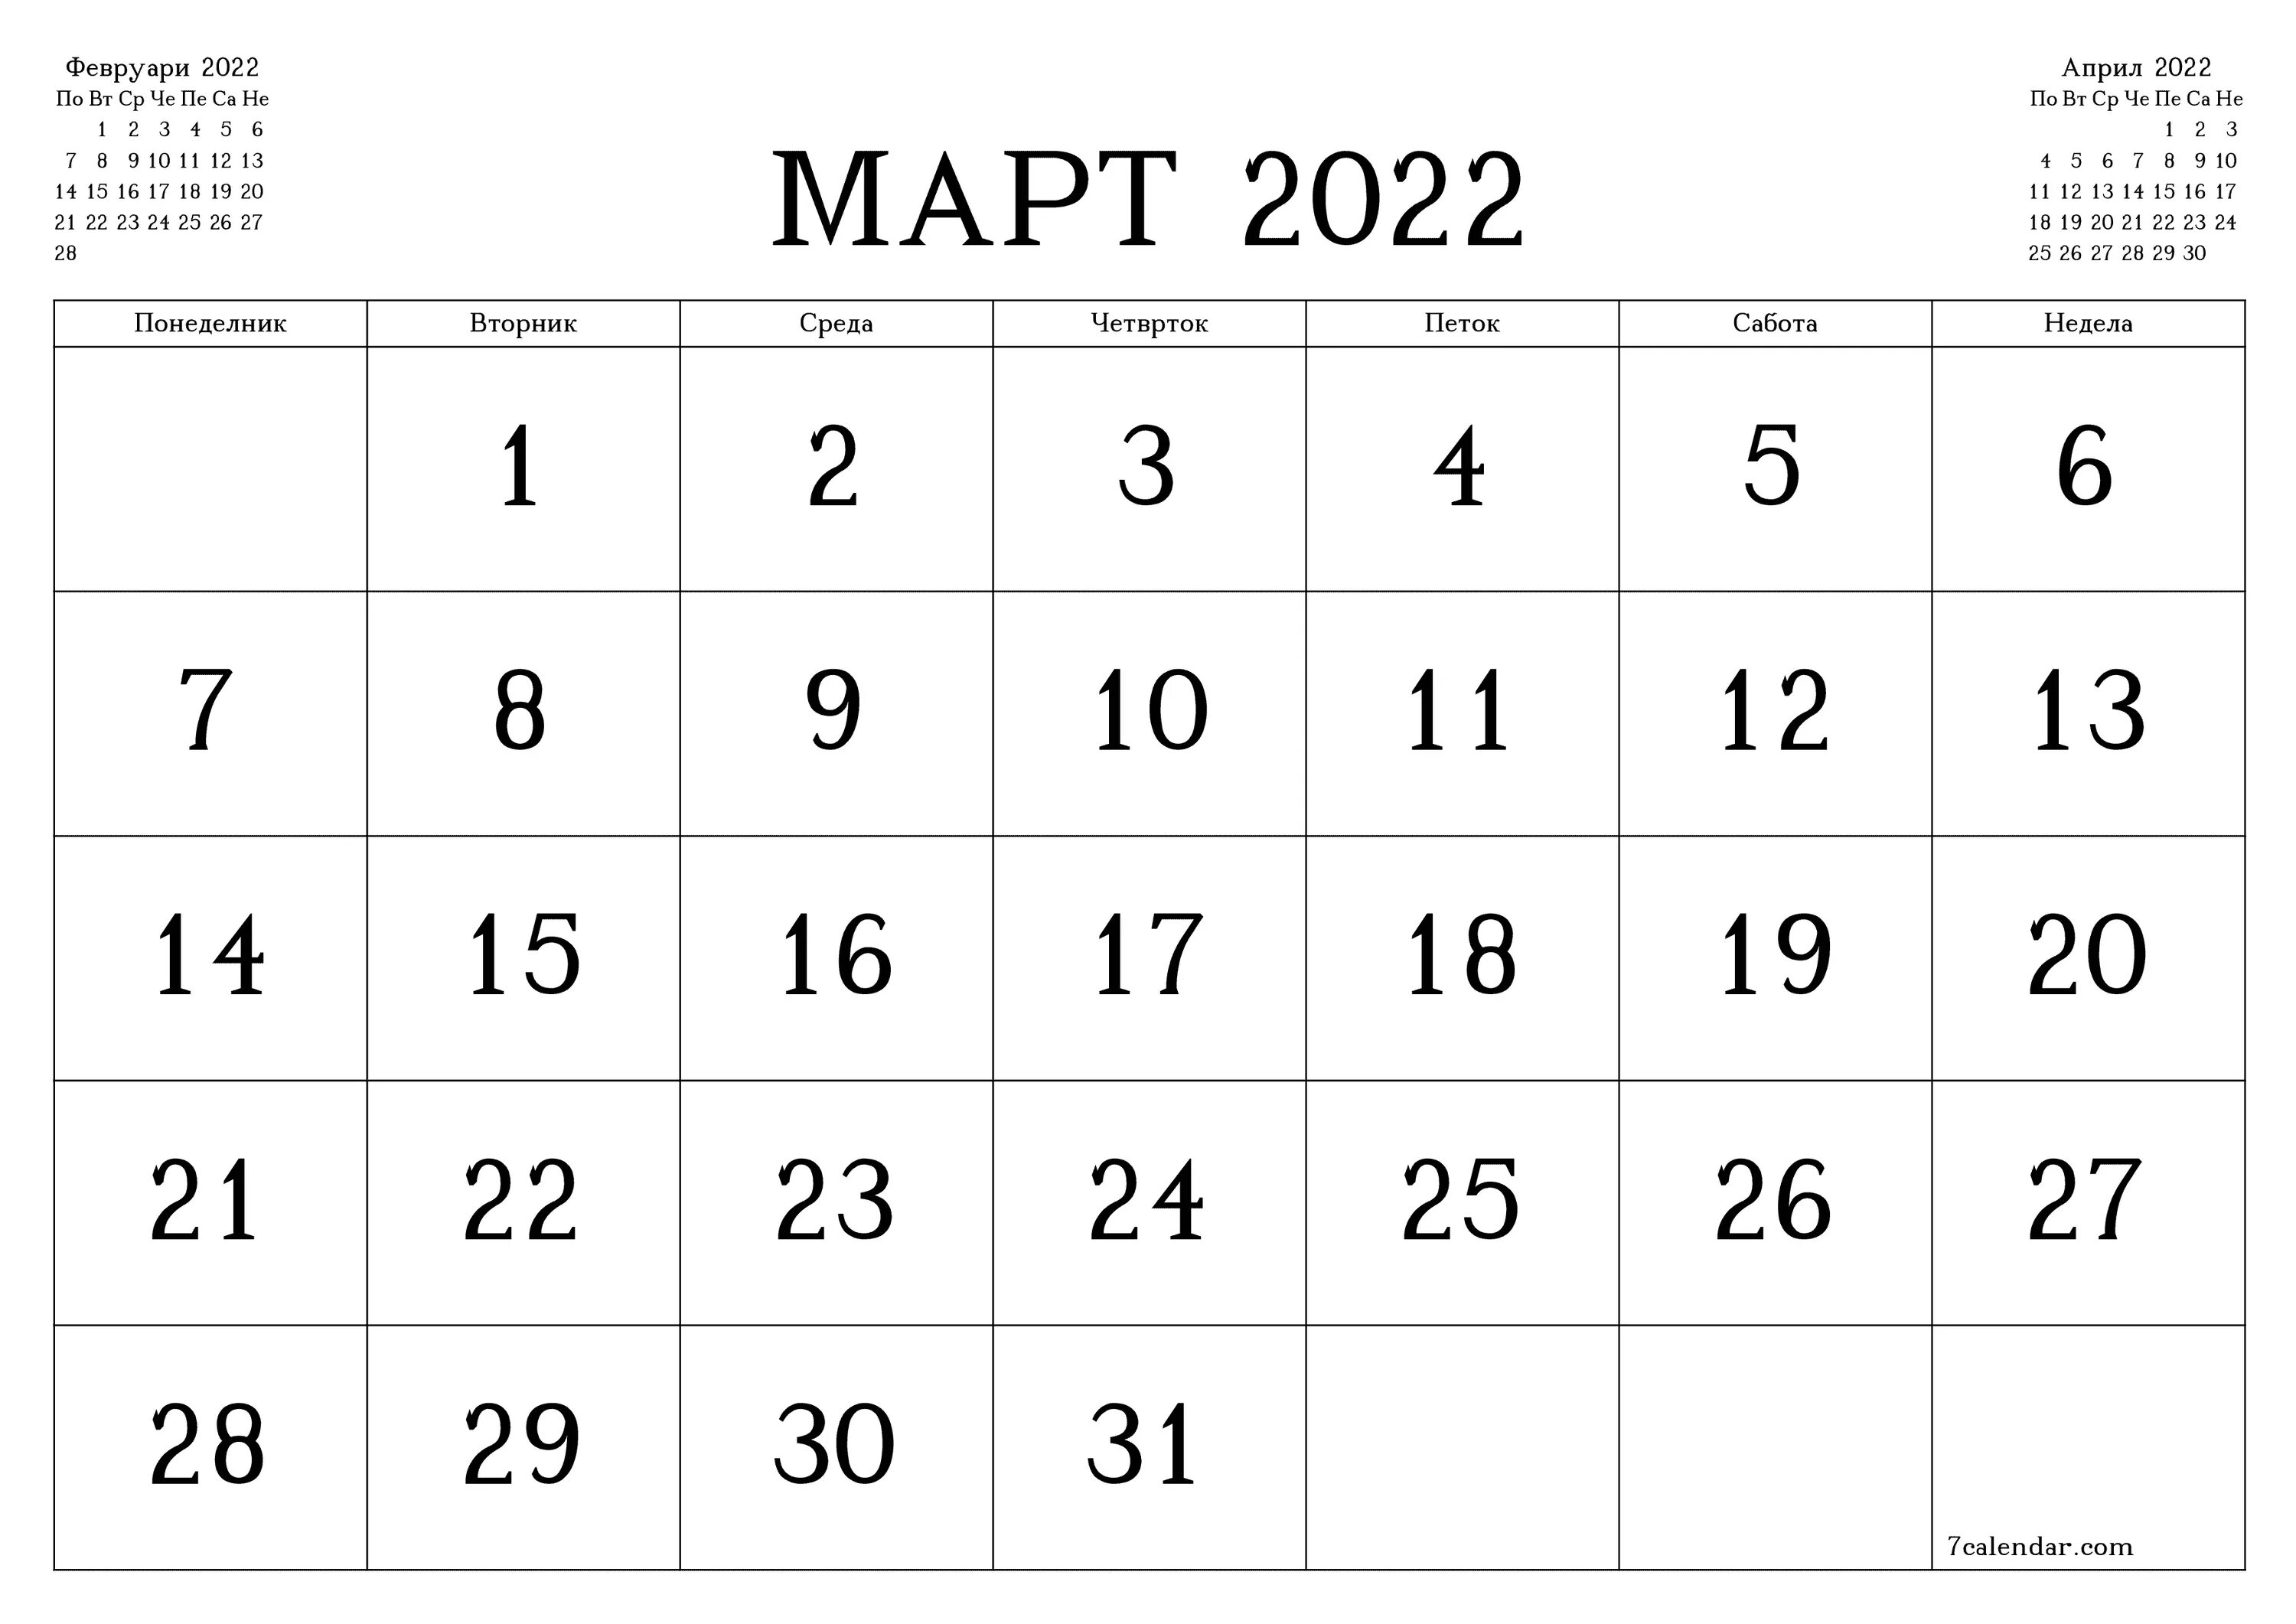 Календарь июль 2022. Календарь март 2022. Календарь 2022 март месяц. Календарь на март месяц 2022 года.